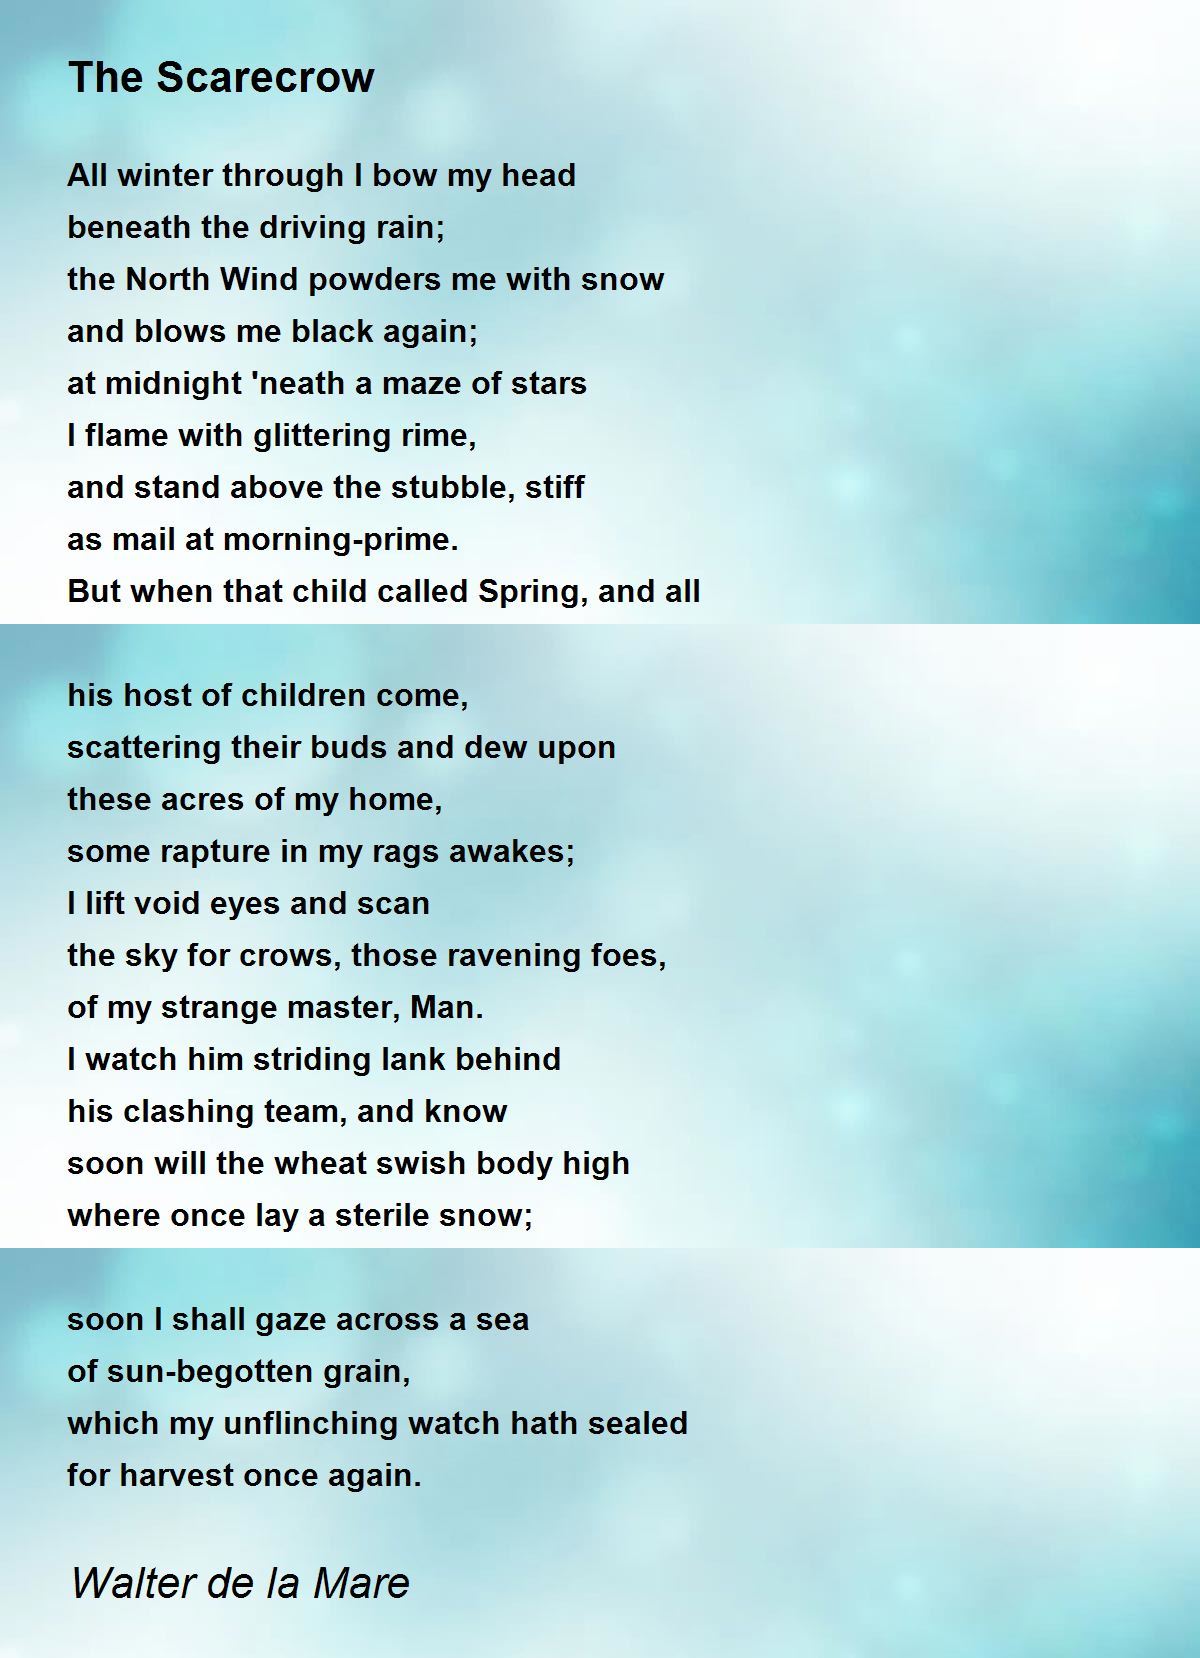 The Scarecrow Poem by Walter de la Mare - Poem Hunter